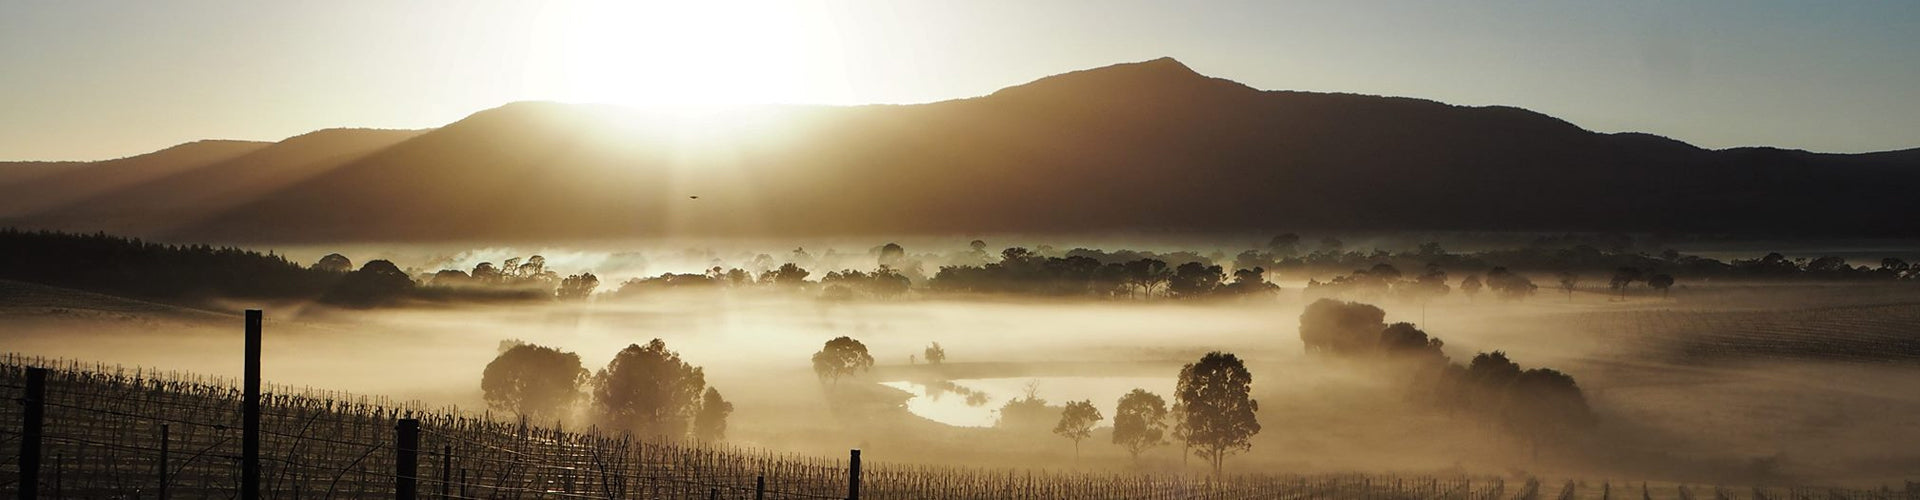 Mount Langi Ghiran Vineyards in Victoria State, Australia